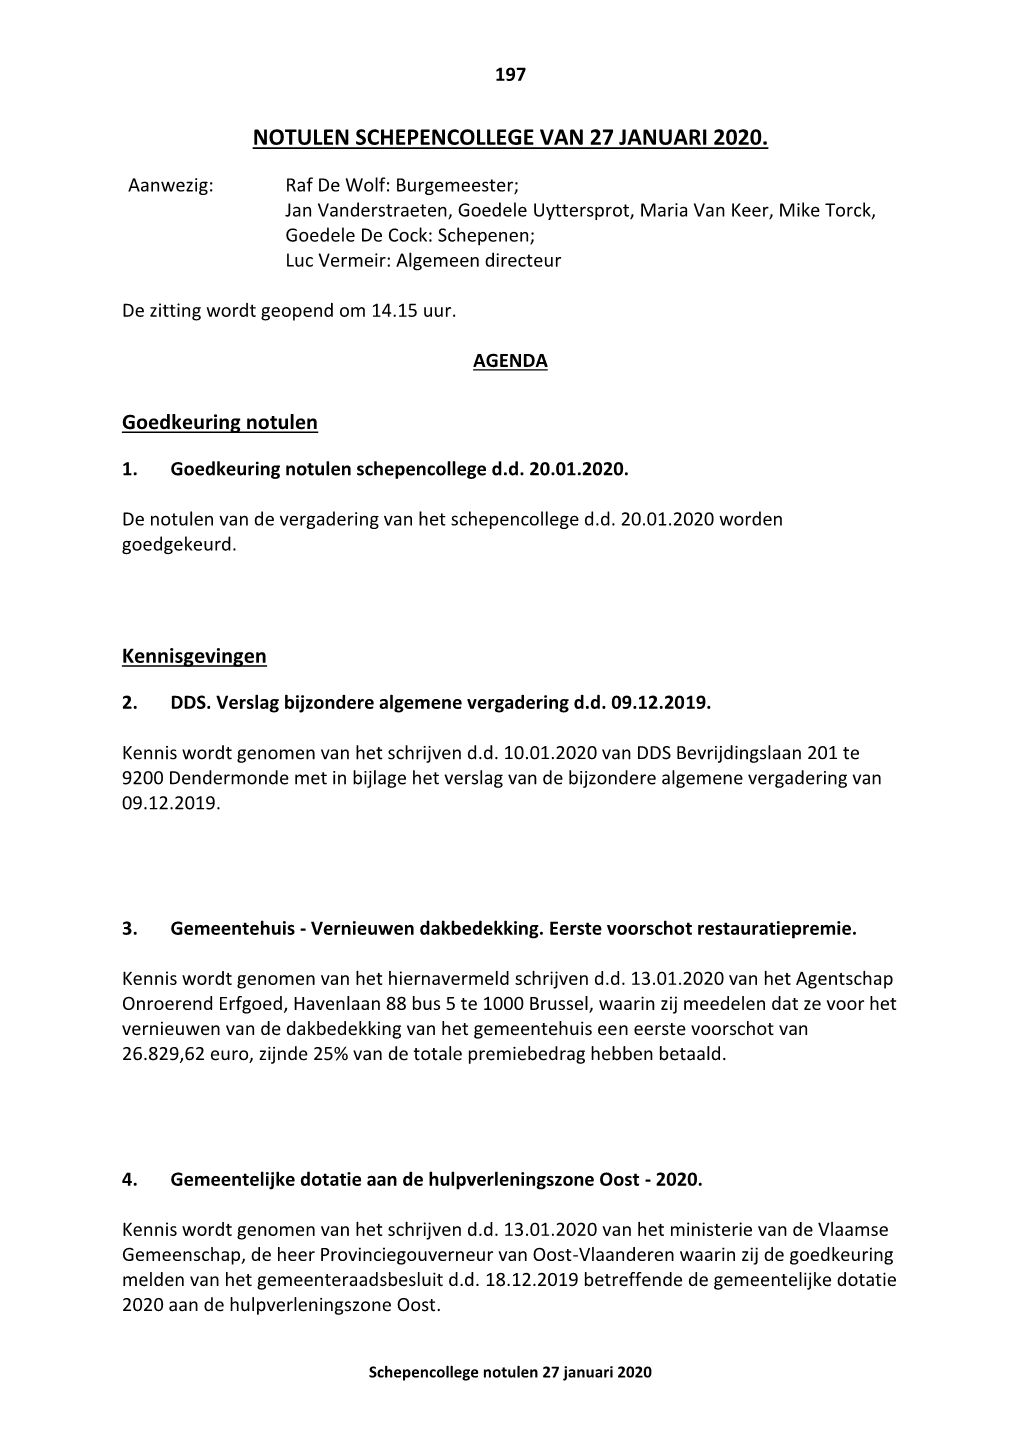 Notulen Schepencollege Van 27 Januari 2020